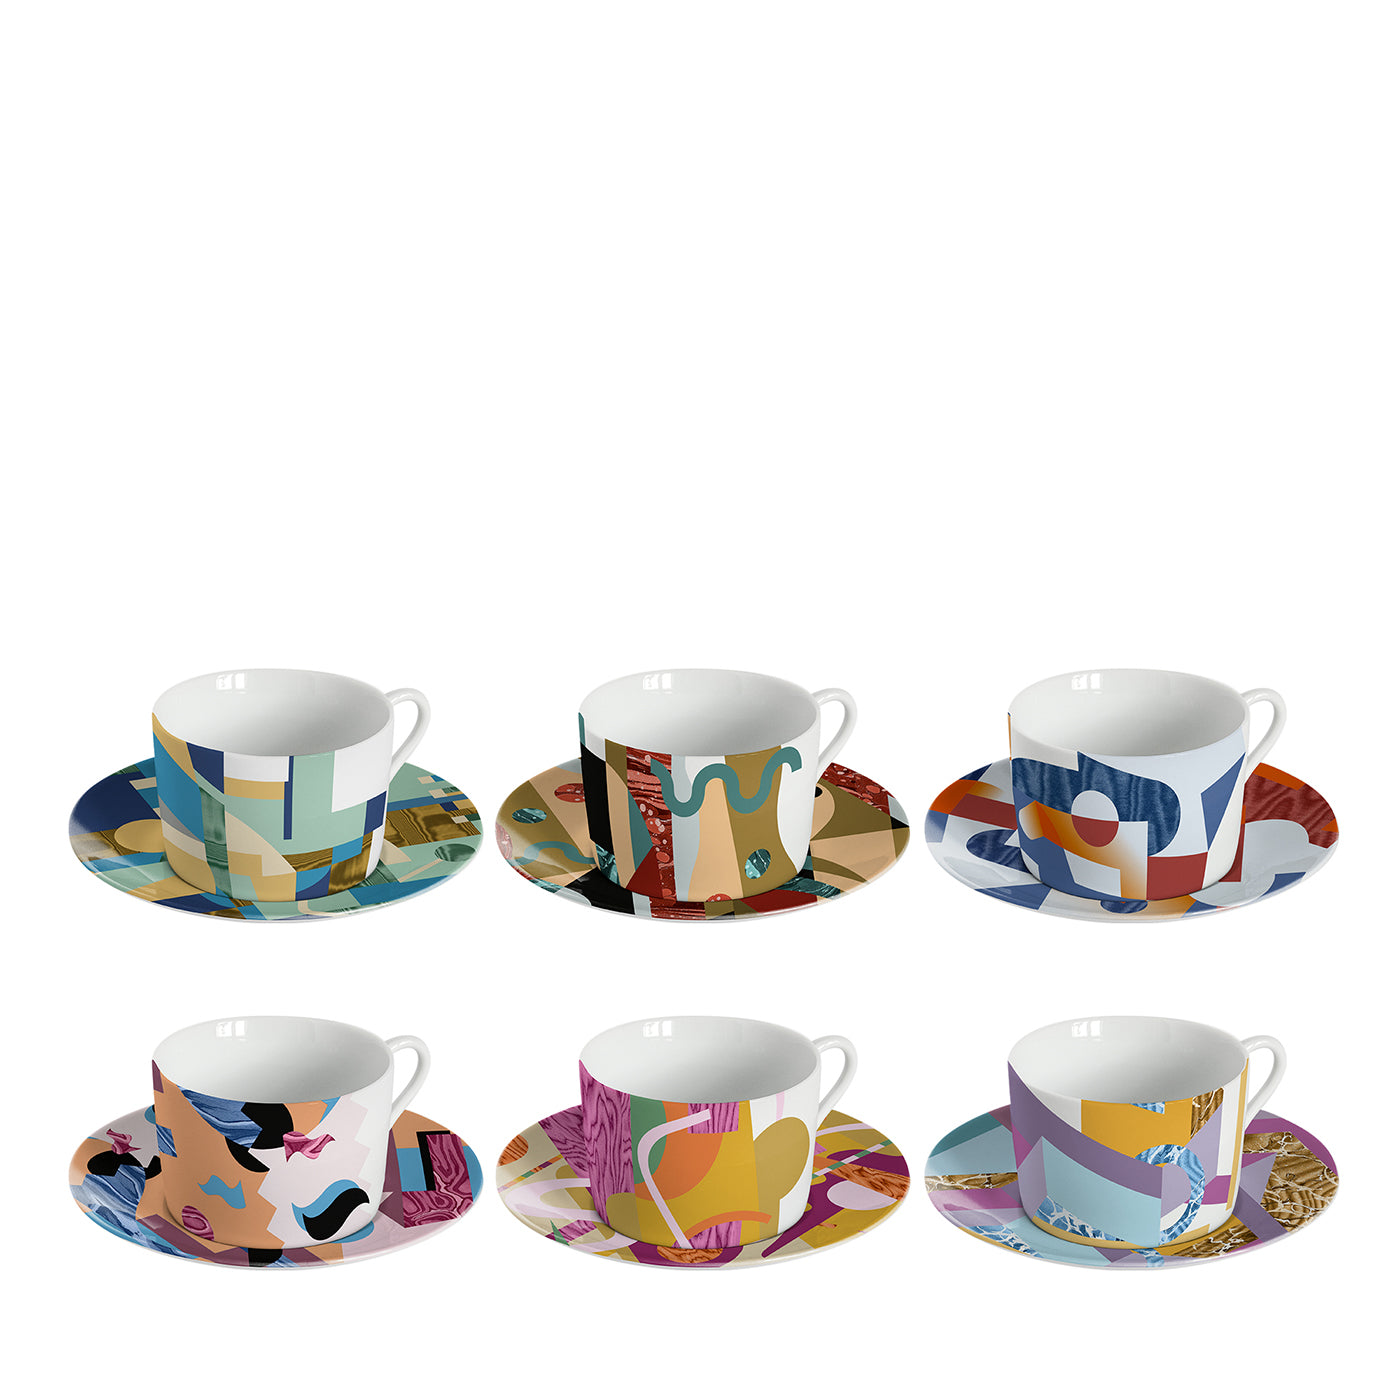 Alchimieset de 6 tazas de té de porcelana con decoración abstracta - Vista principal